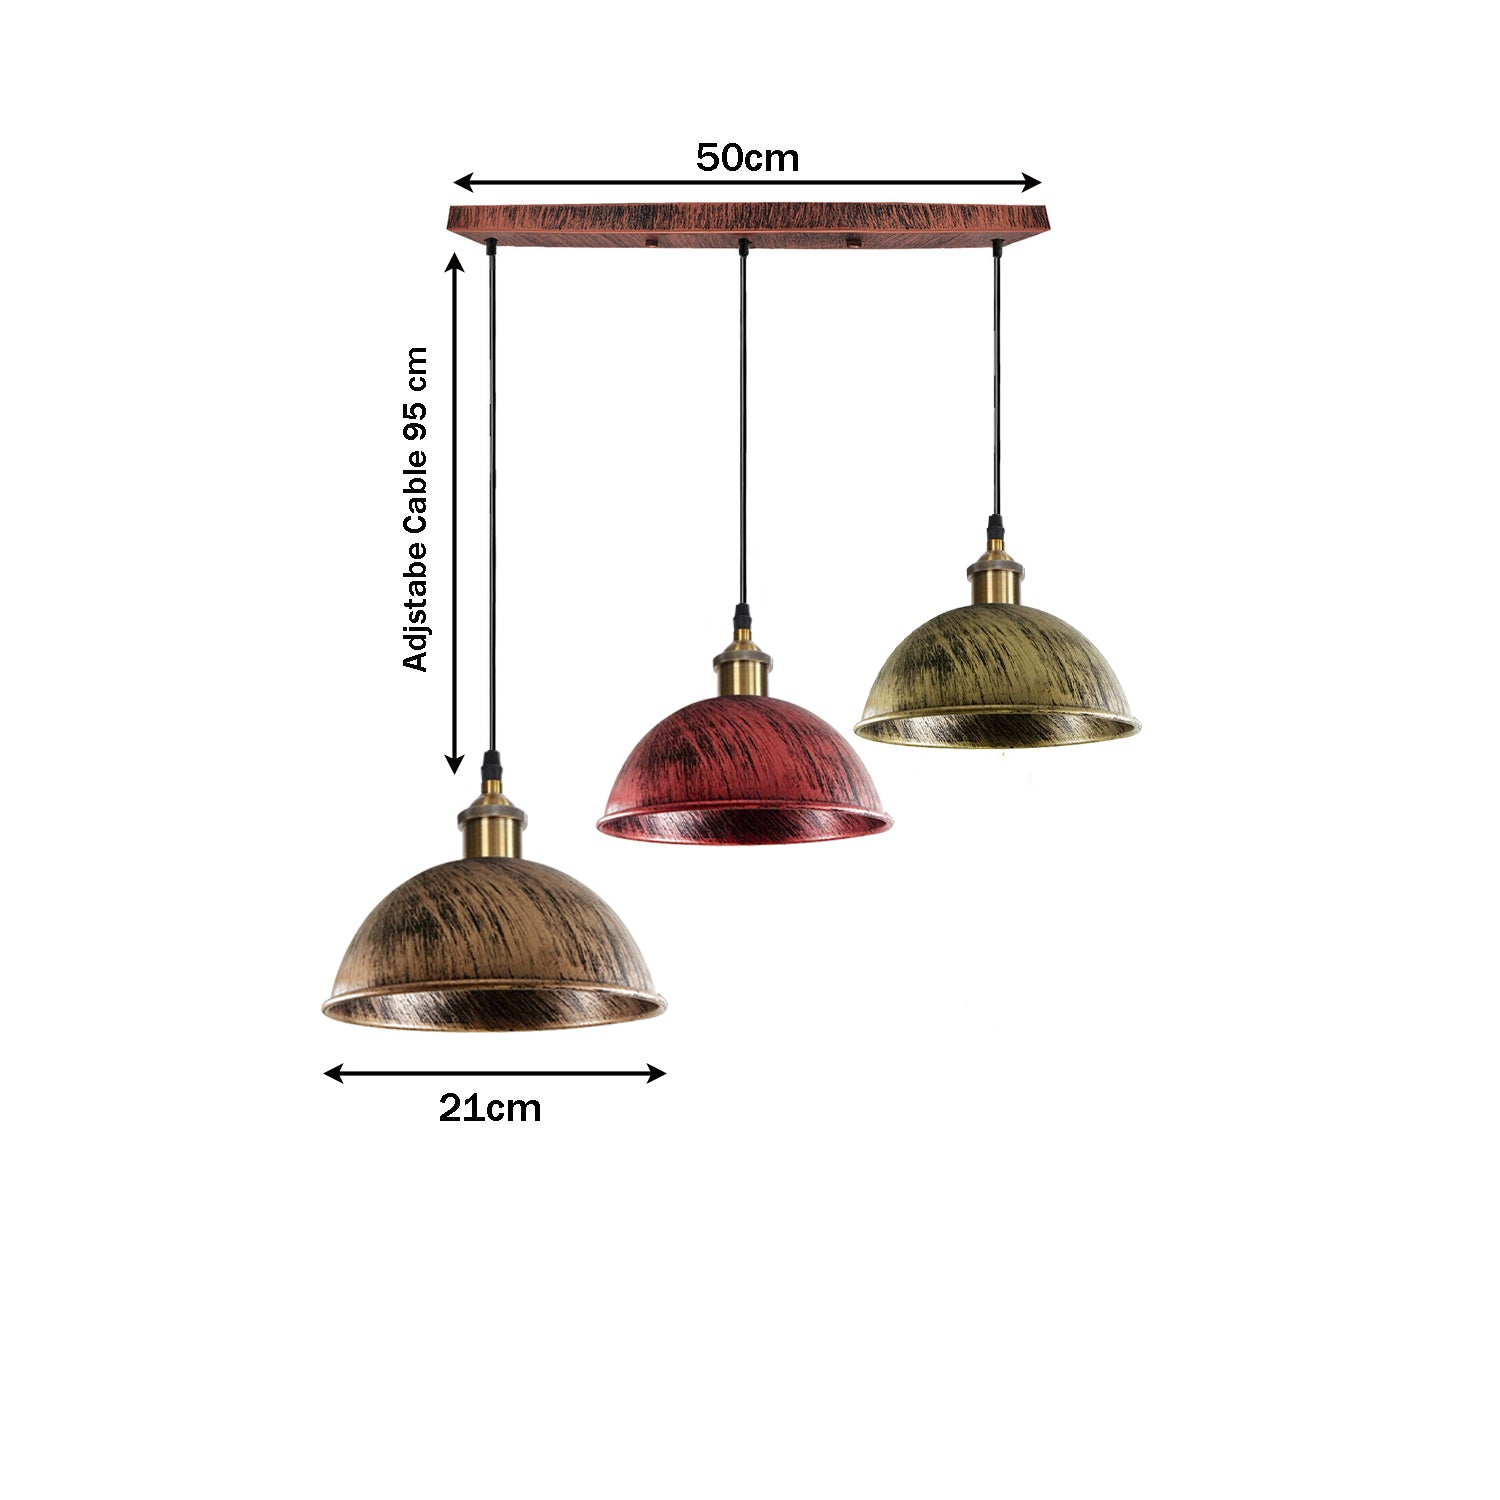 3-Heads Ceiling Pendant Cluster Light Fitting Lights E27 Socket Hanging Chandelier Light~1265 - LEDSone UK Ltd